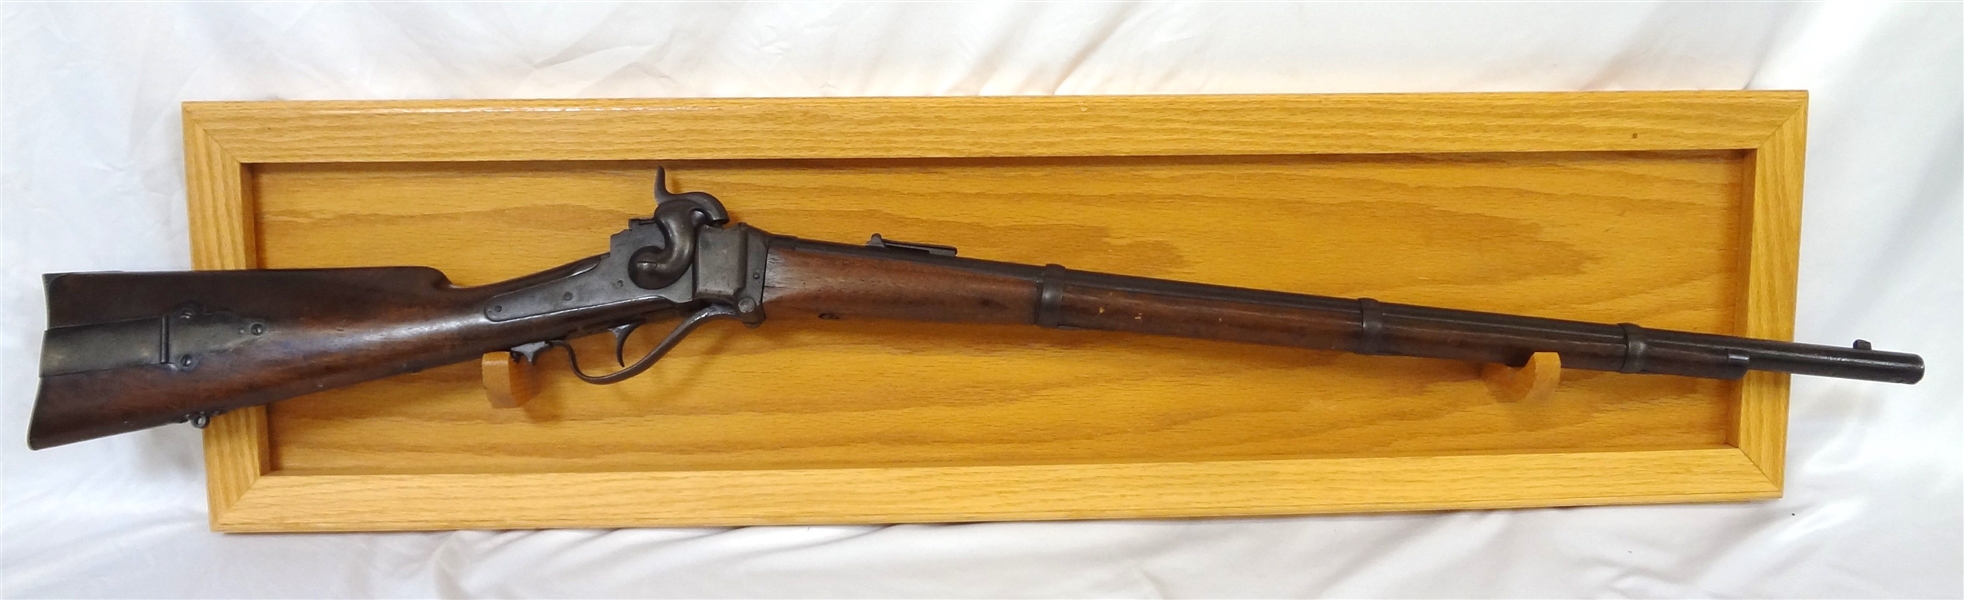 Civil War Era Sharps Rifle 1859